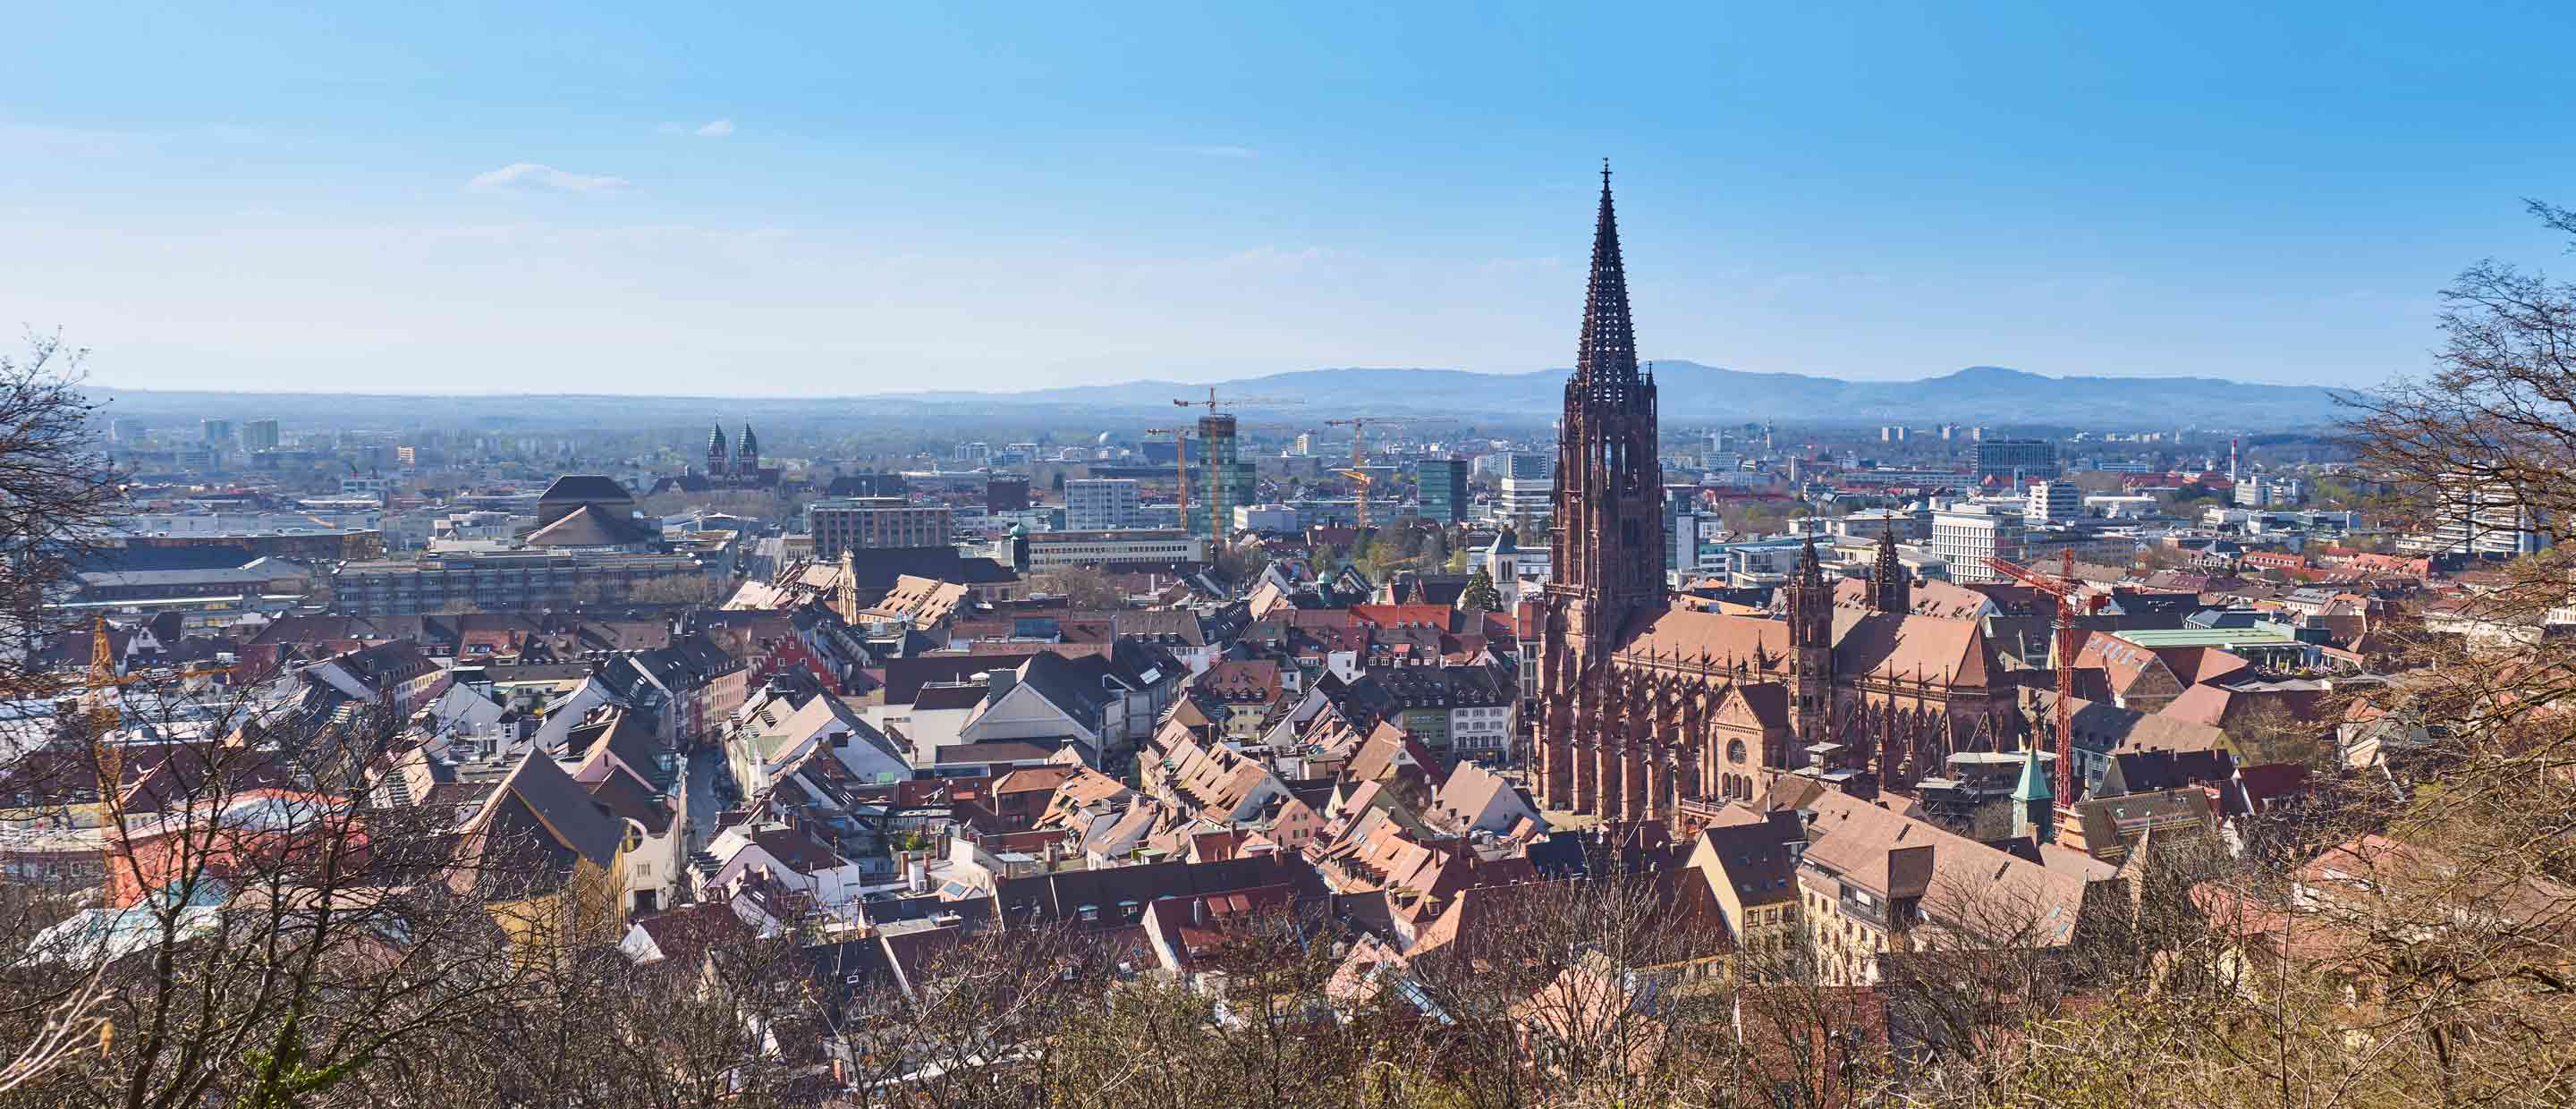 Freiburg wealth management